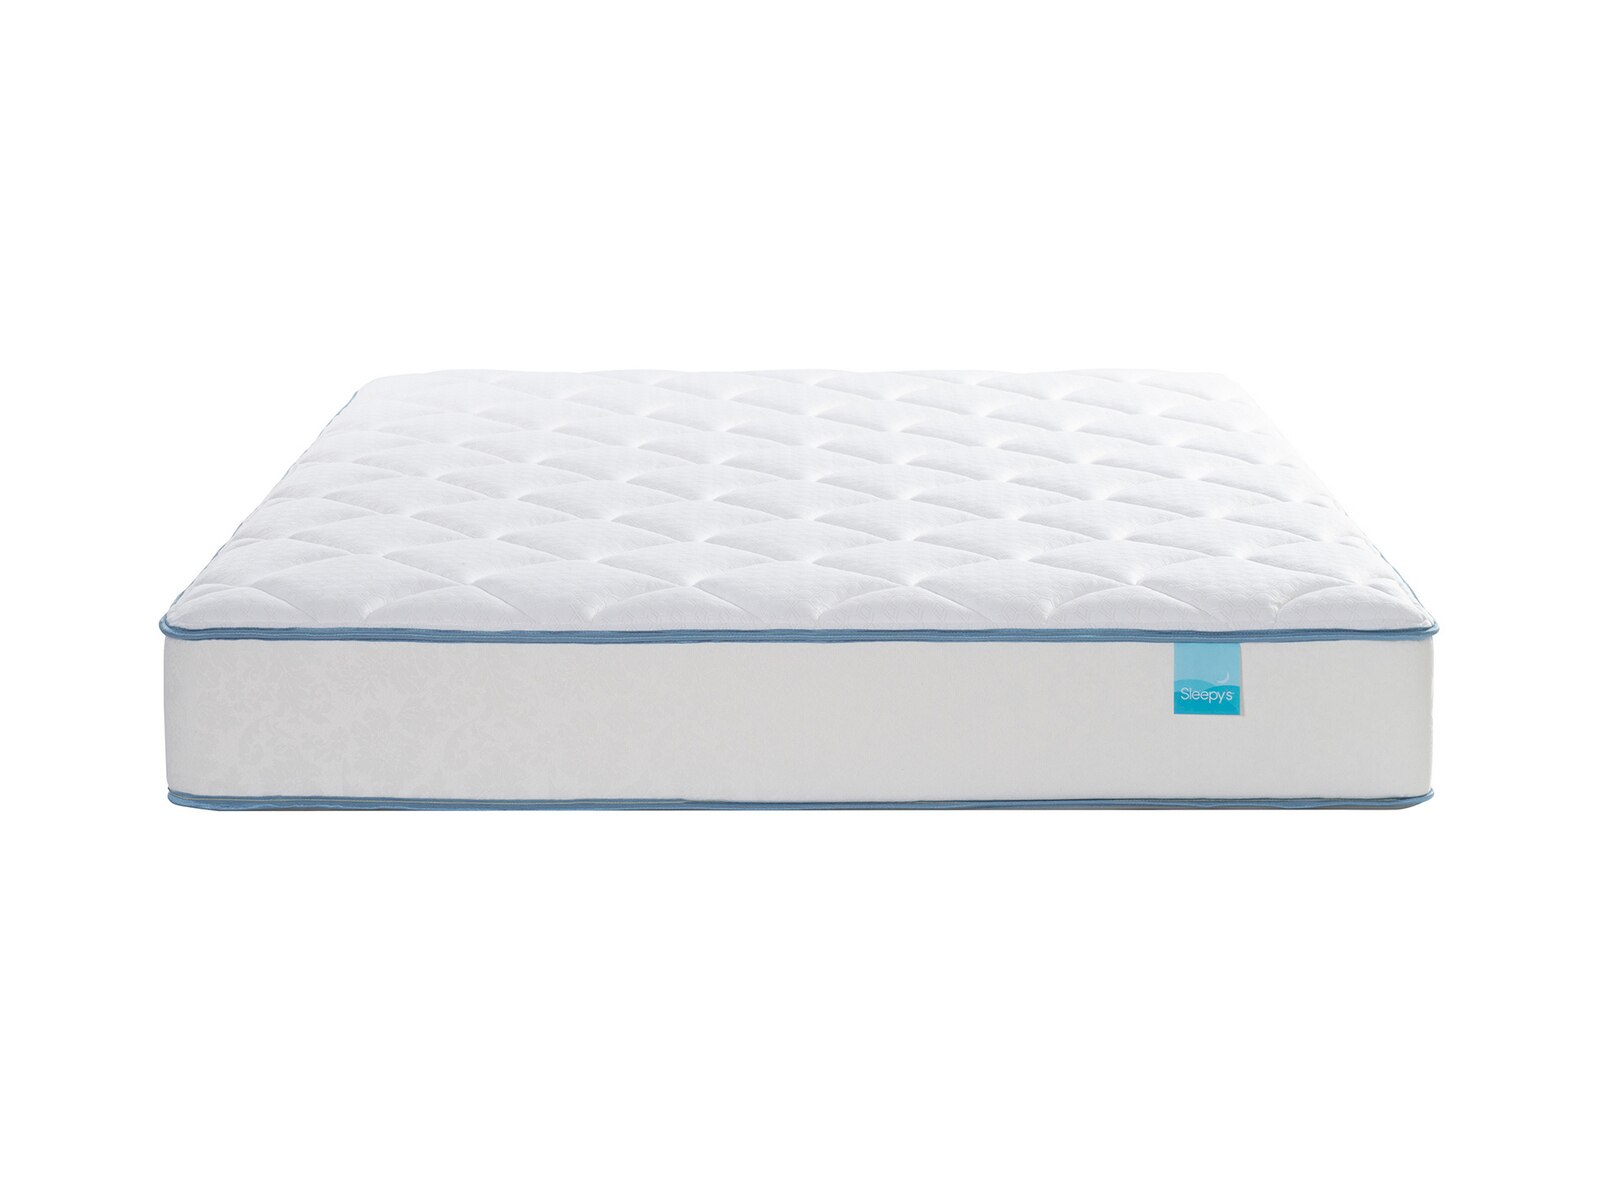 sleepys 10 foam mattress